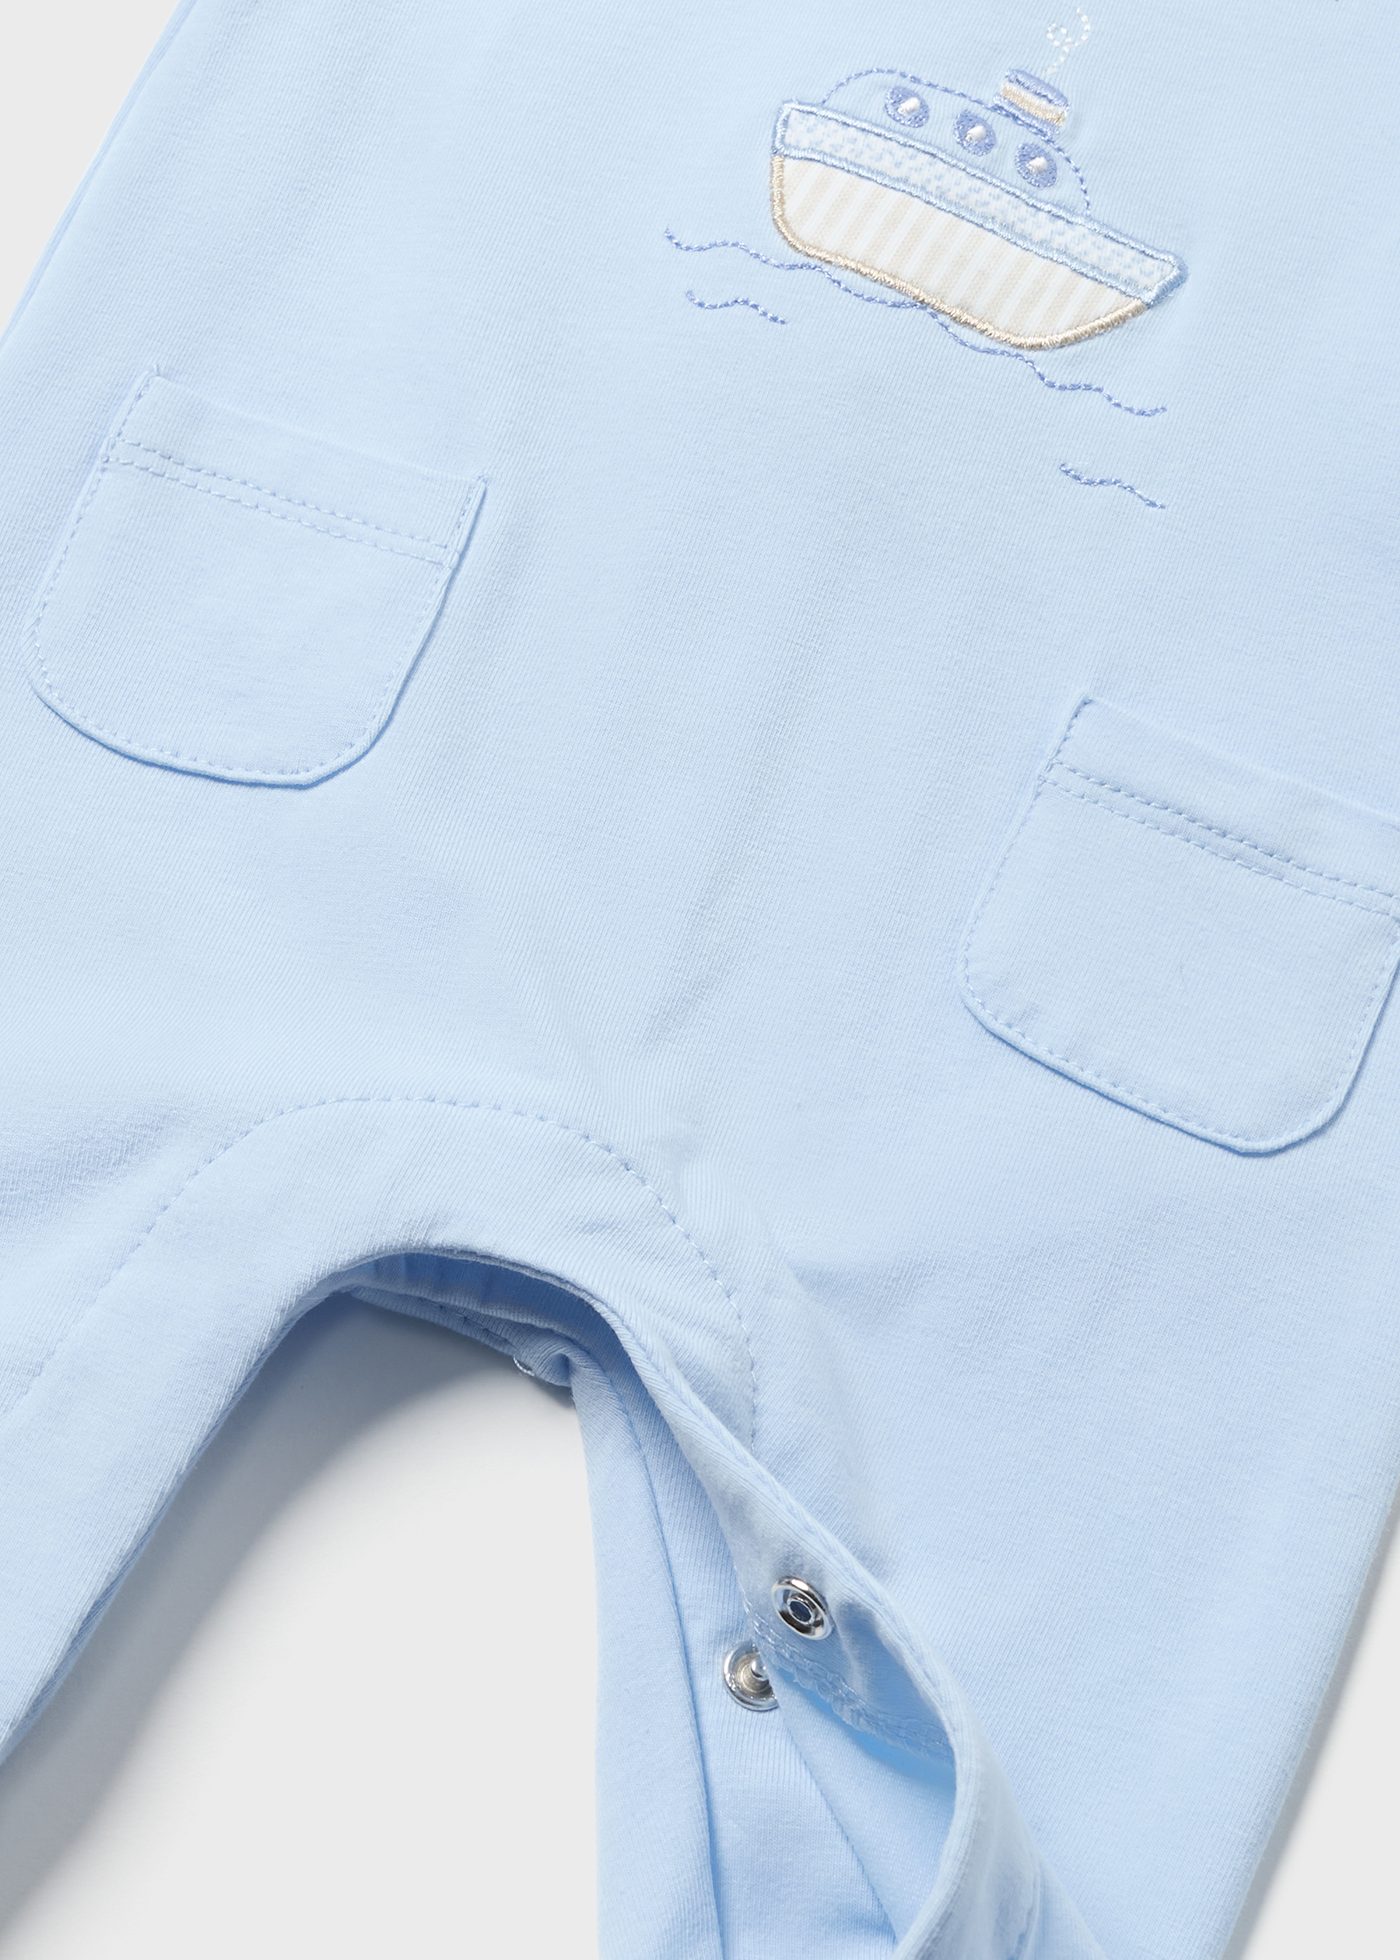 Sustainable cotton print sleepsuit newborn